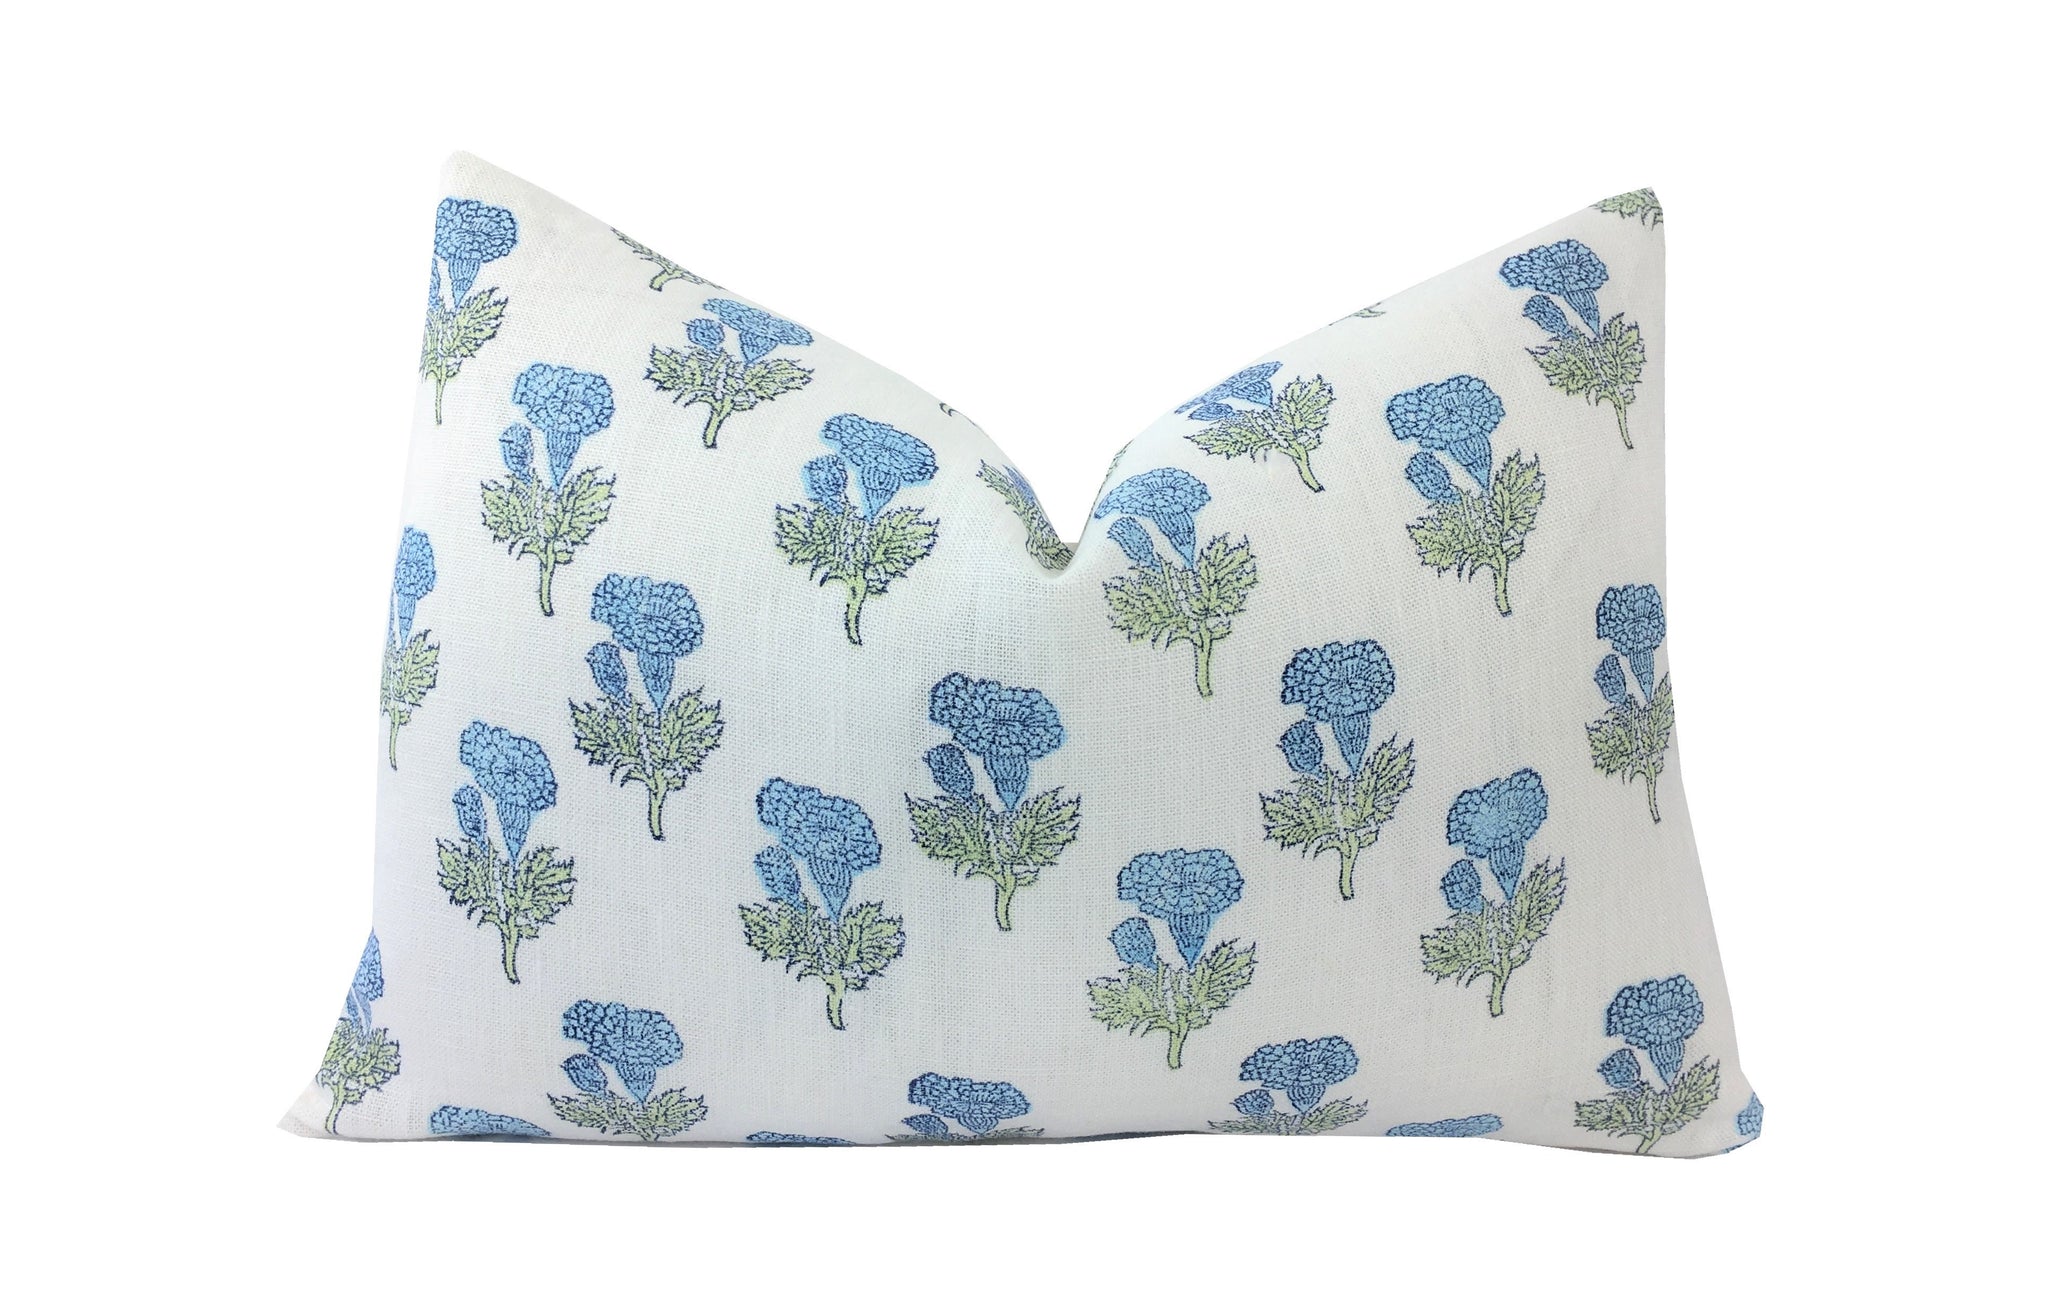 Samali Sky Blue and Green Floral Lumbar Pillow Cover